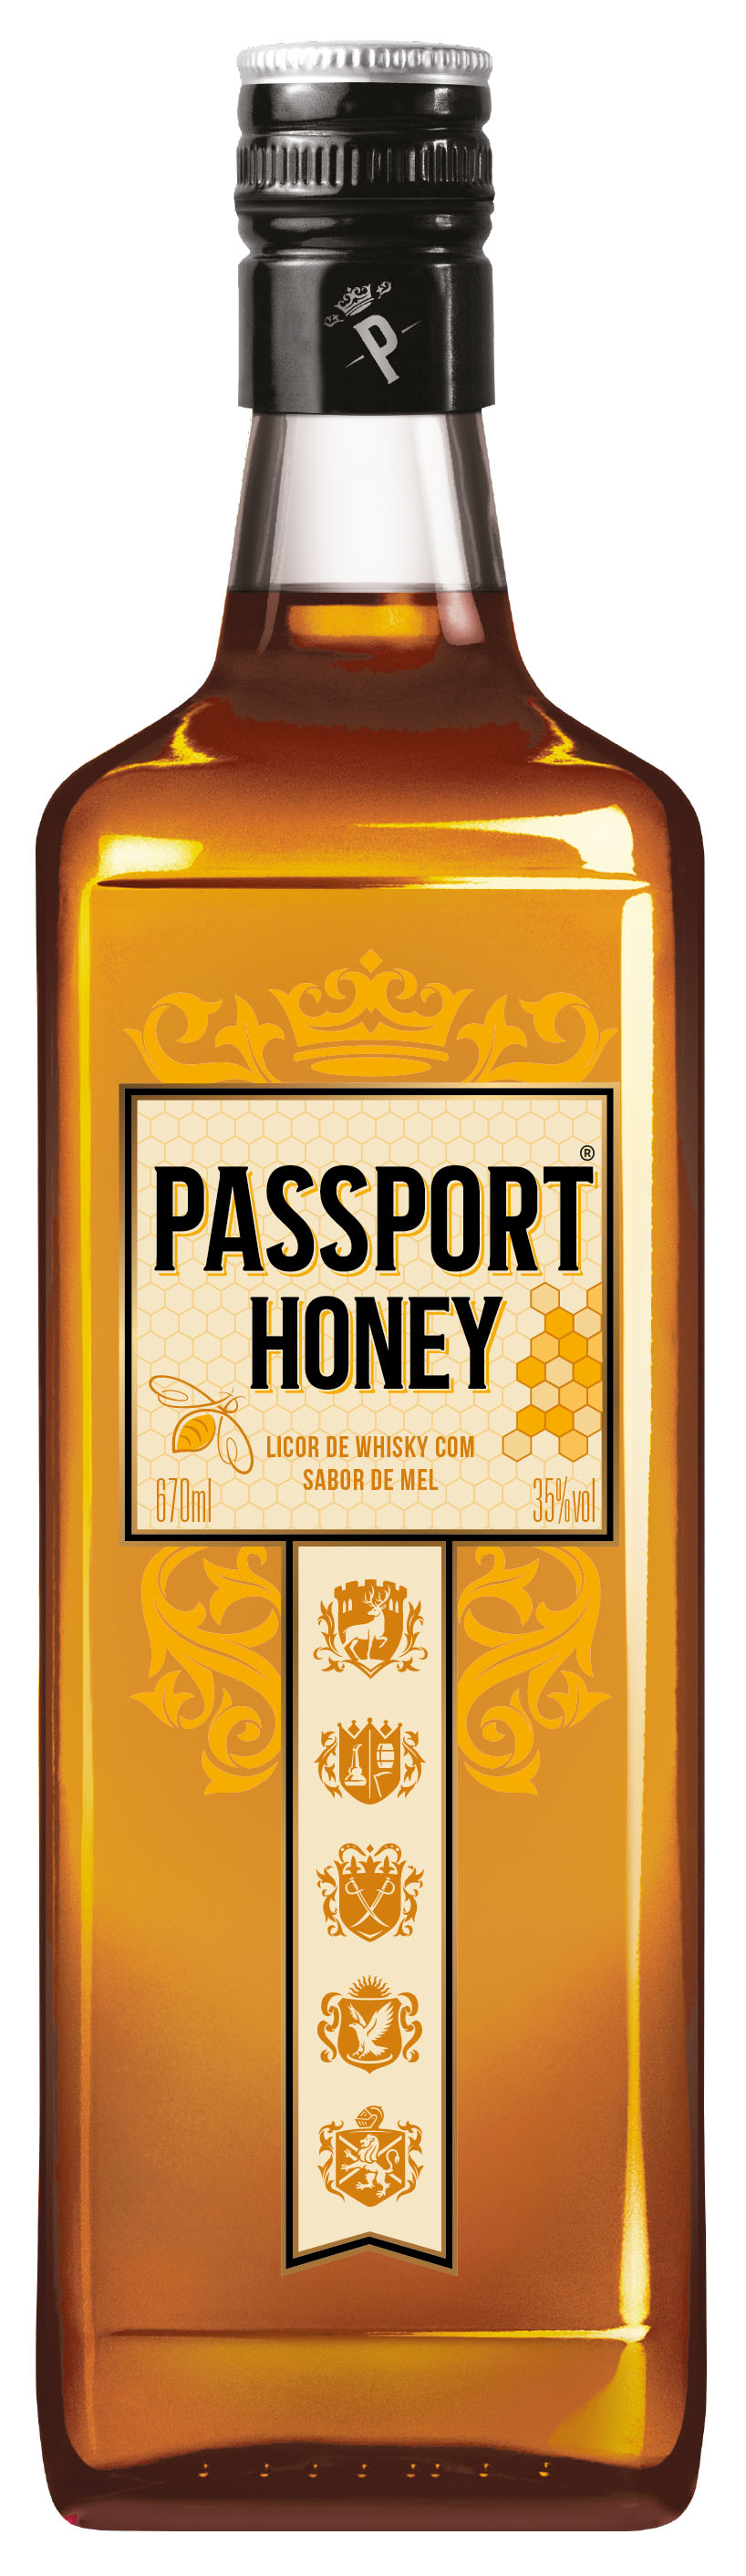 <span style = 'font-size:120%; font-weight: bold;'>Whisky Passport Honey</span><br>É uma embalagem clean, de vidro transparente e detalhes gráficos no rótulo que rementem ao sabor mel da bebida.
O forma...